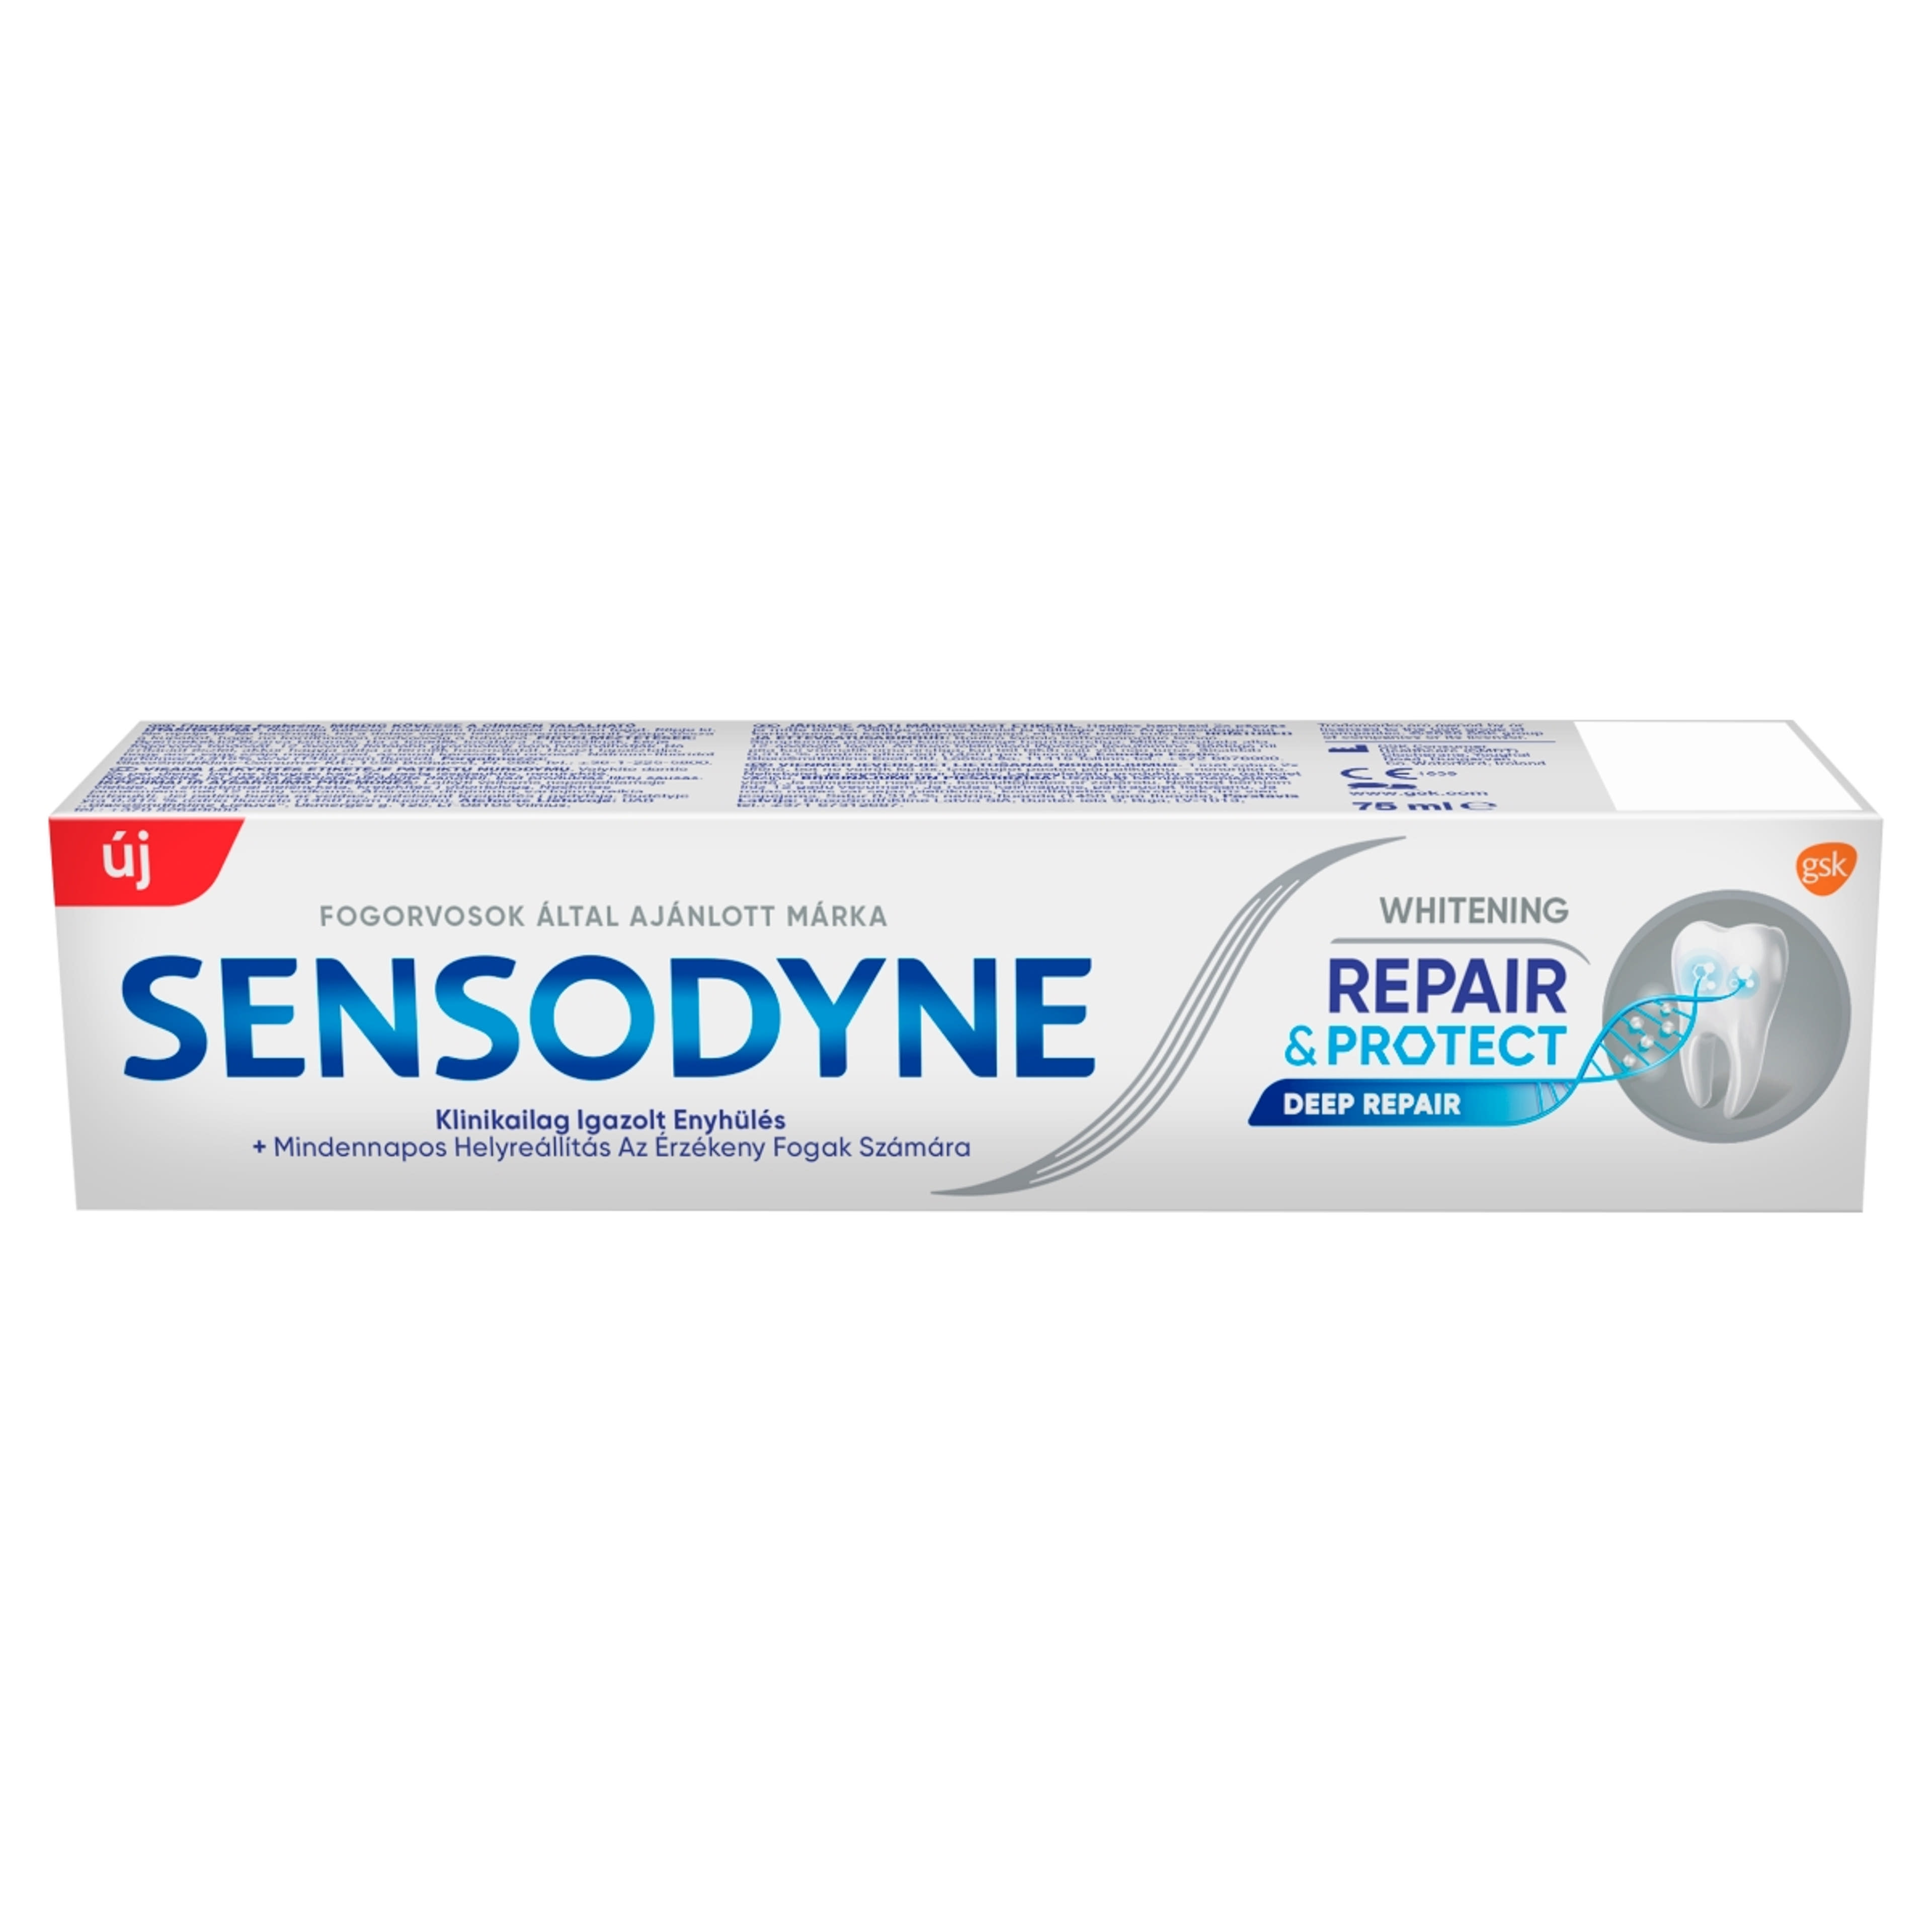 Sensodyne Repair & Protect Whitening fogkrém - 75 ml-1